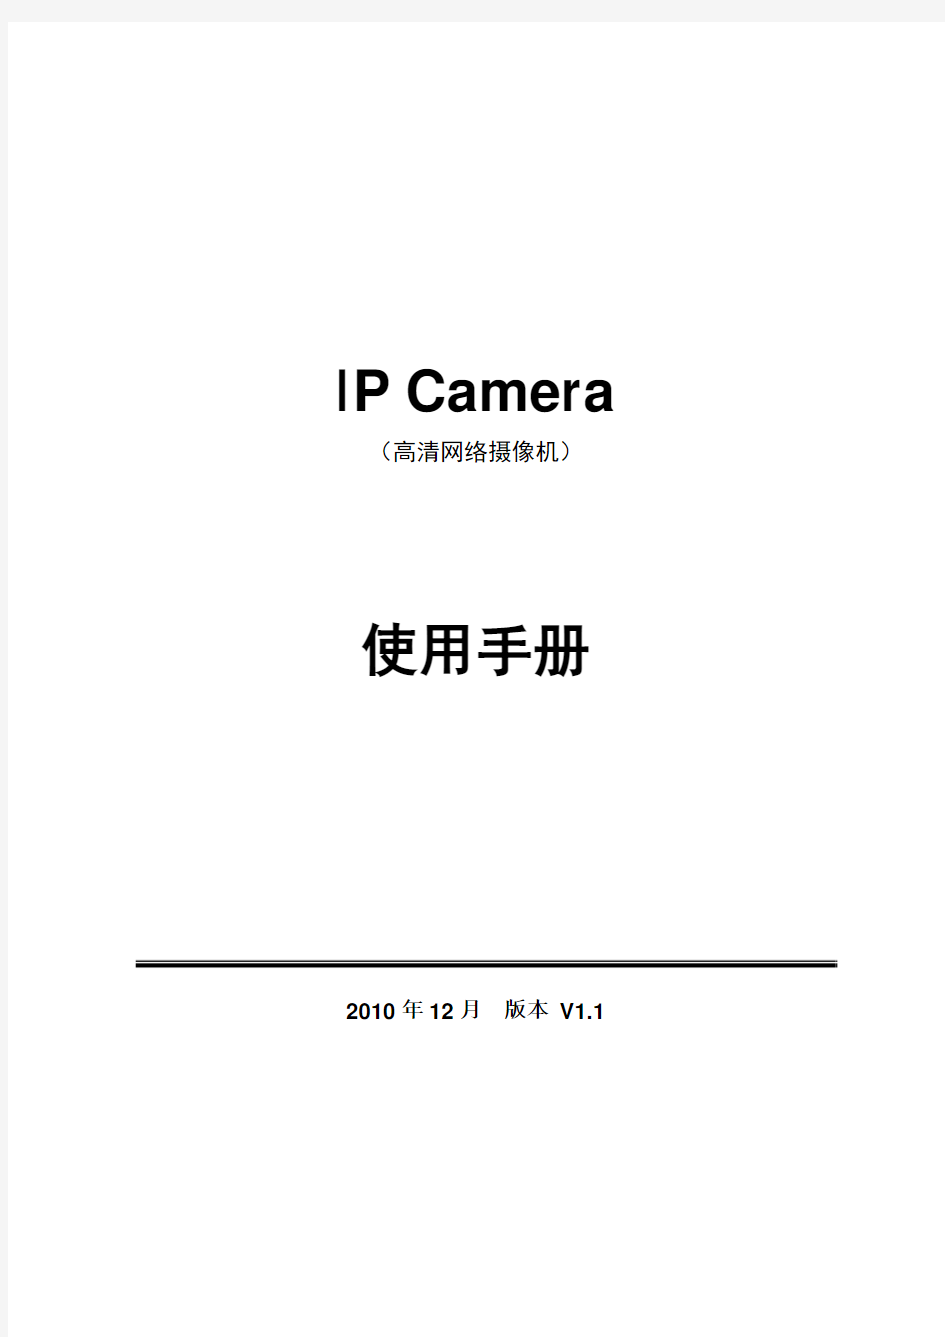 IP Camera高清网络摄像机使用手册